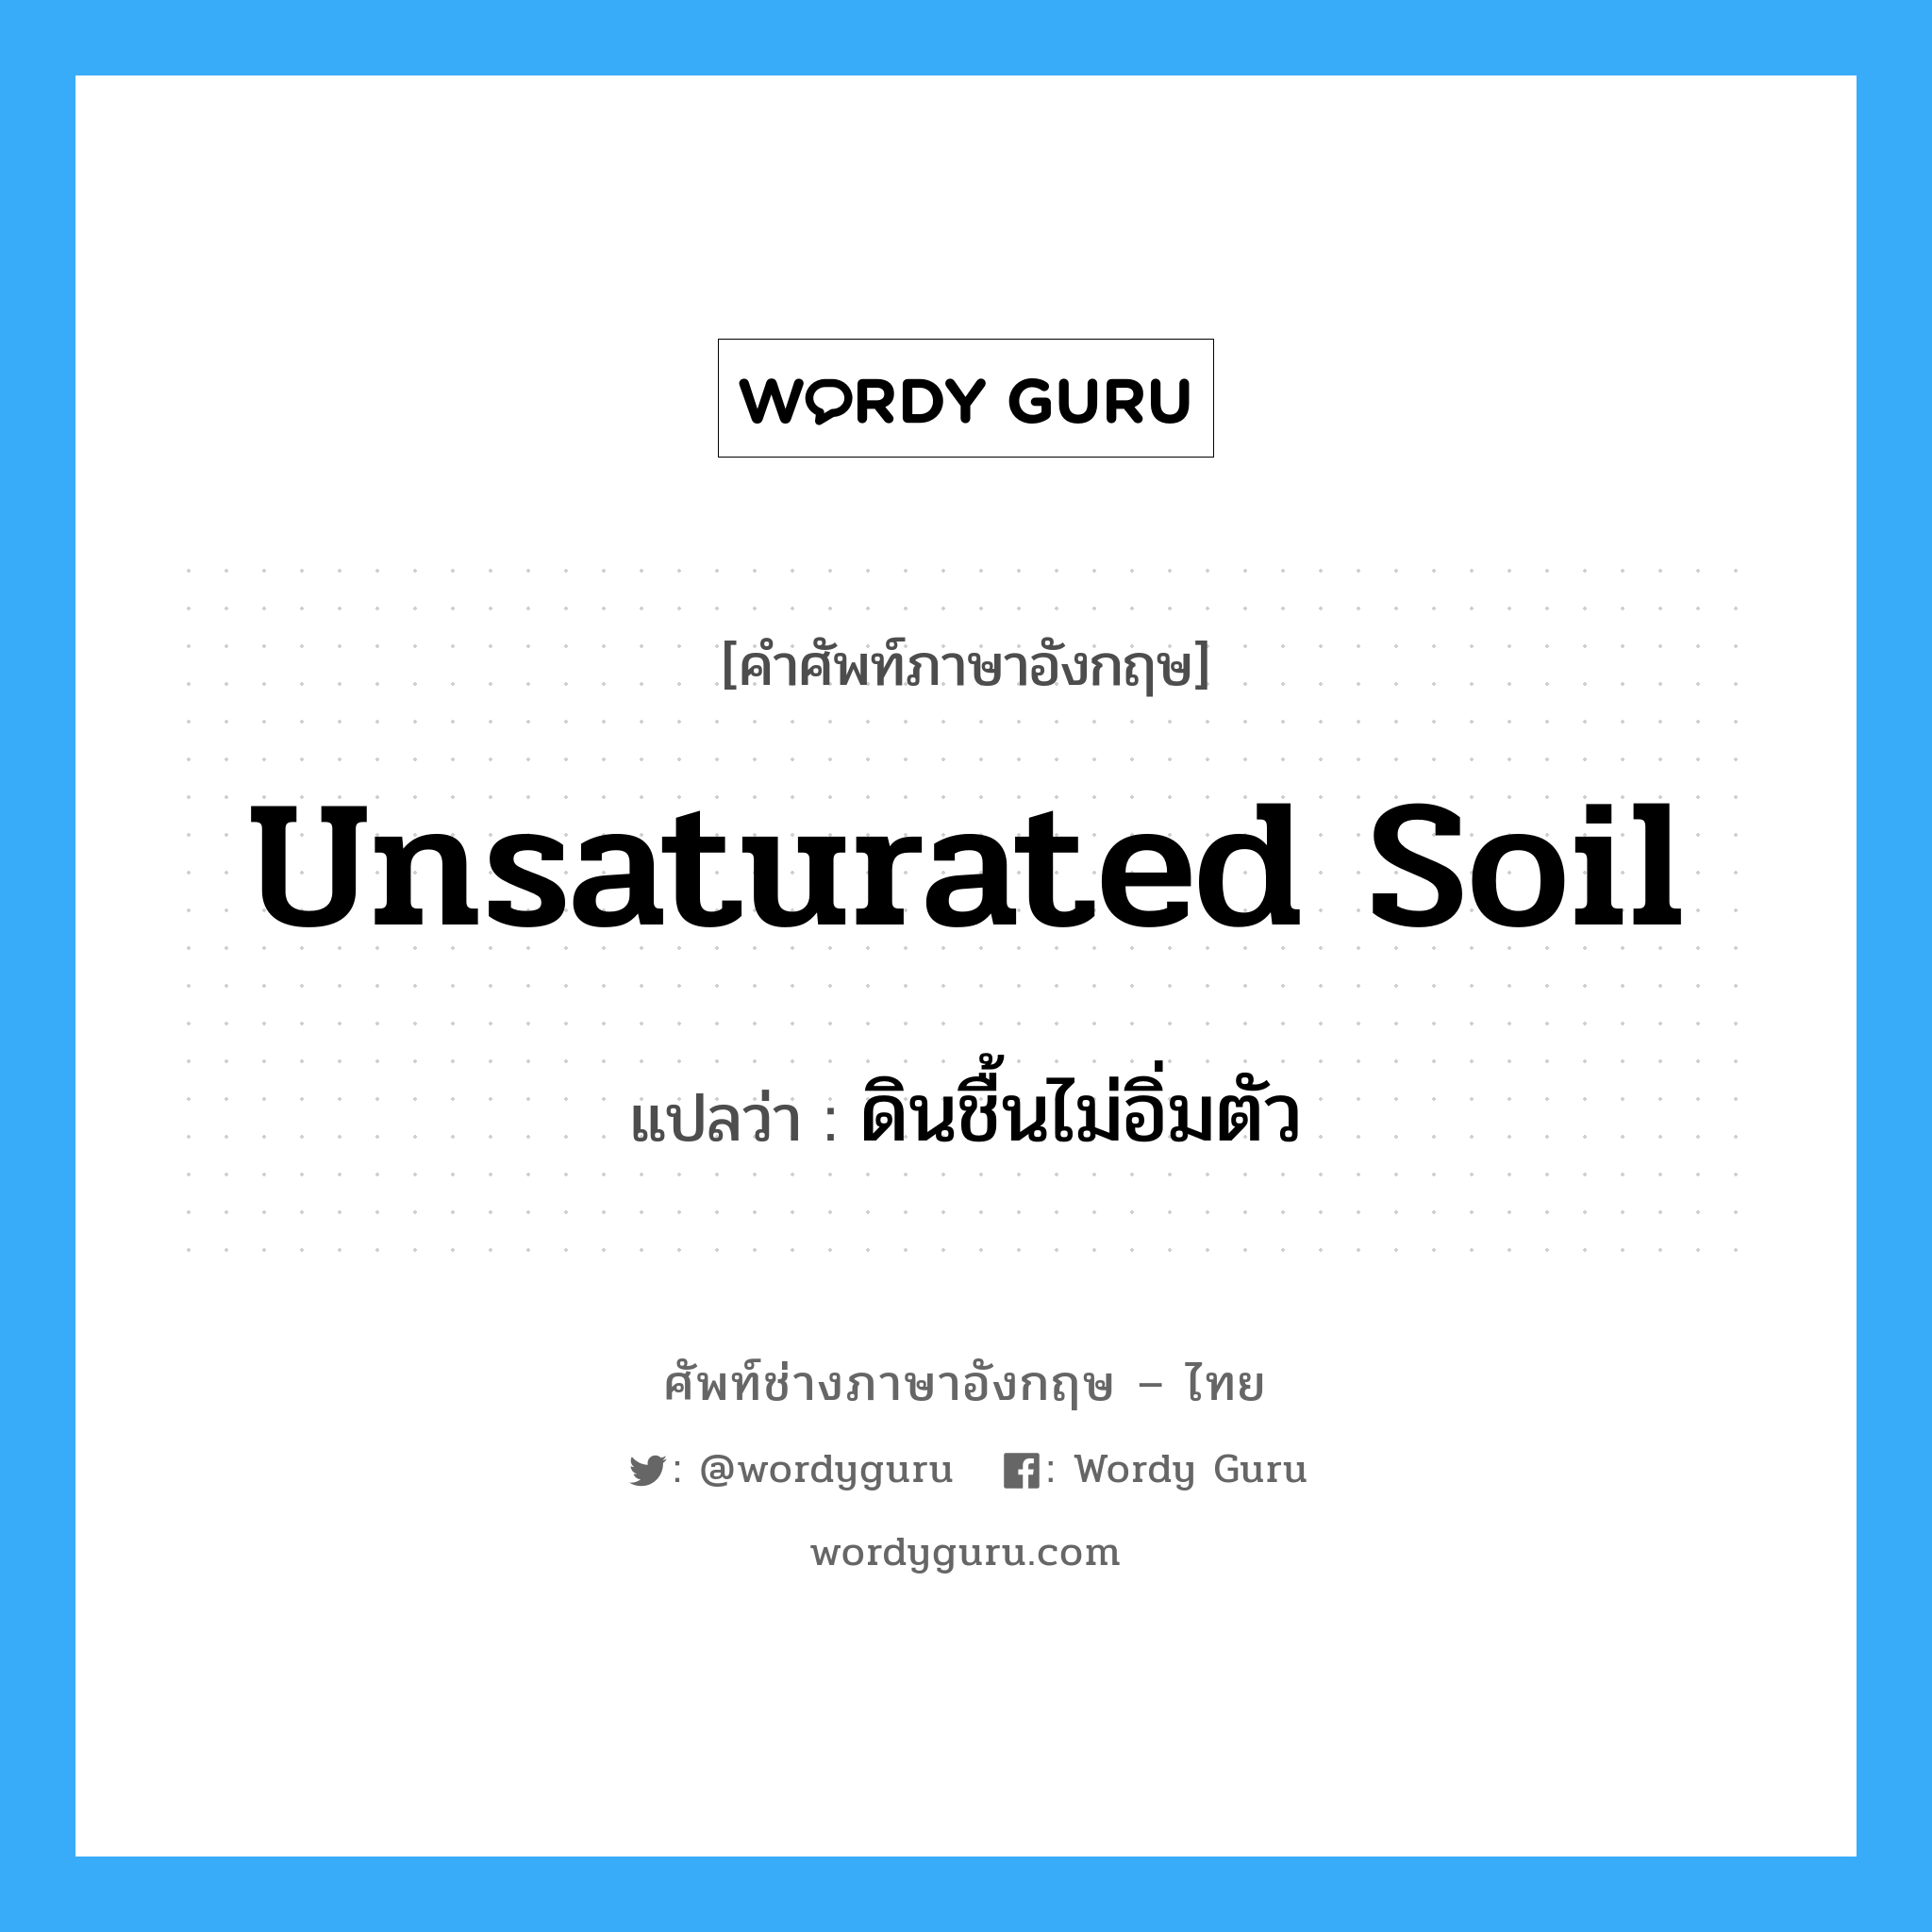 ดินชื้นไม่อิ่มตัว ภาษาอังกฤษ?, คำศัพท์ช่างภาษาอังกฤษ - ไทย ดินชื้นไม่อิ่มตัว คำศัพท์ภาษาอังกฤษ ดินชื้นไม่อิ่มตัว แปลว่า unsaturated soil